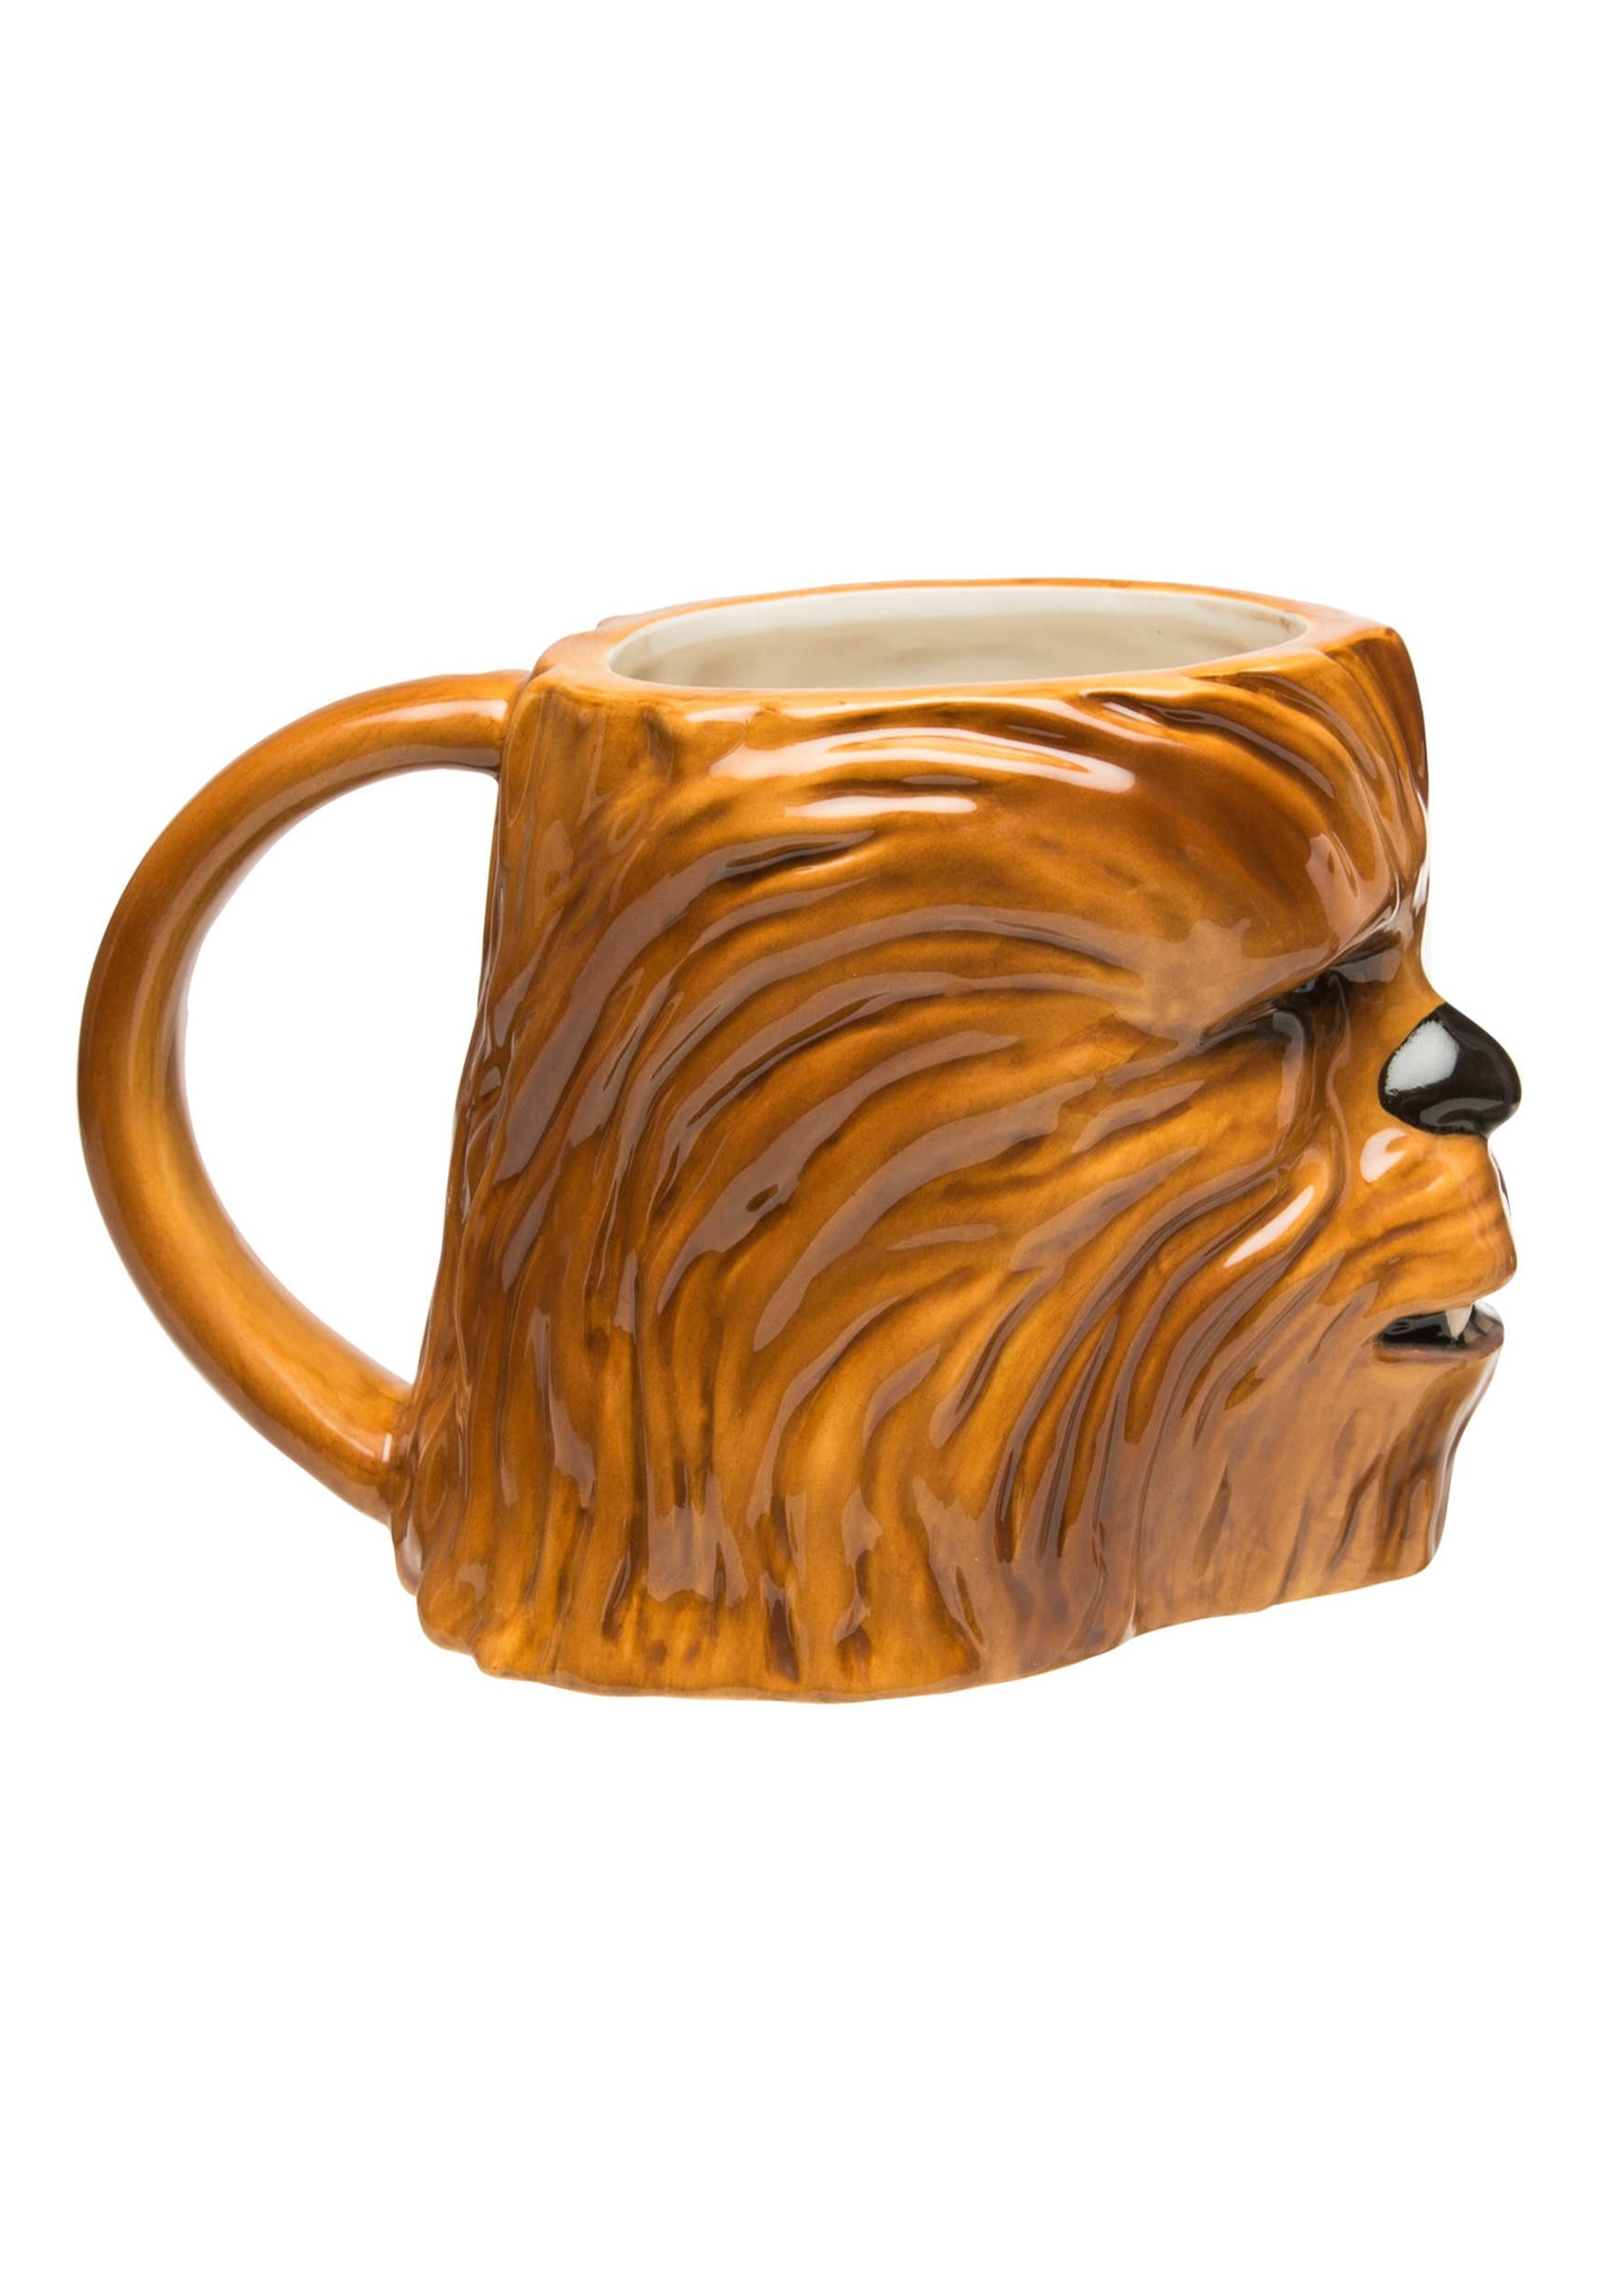 chewbacca cup